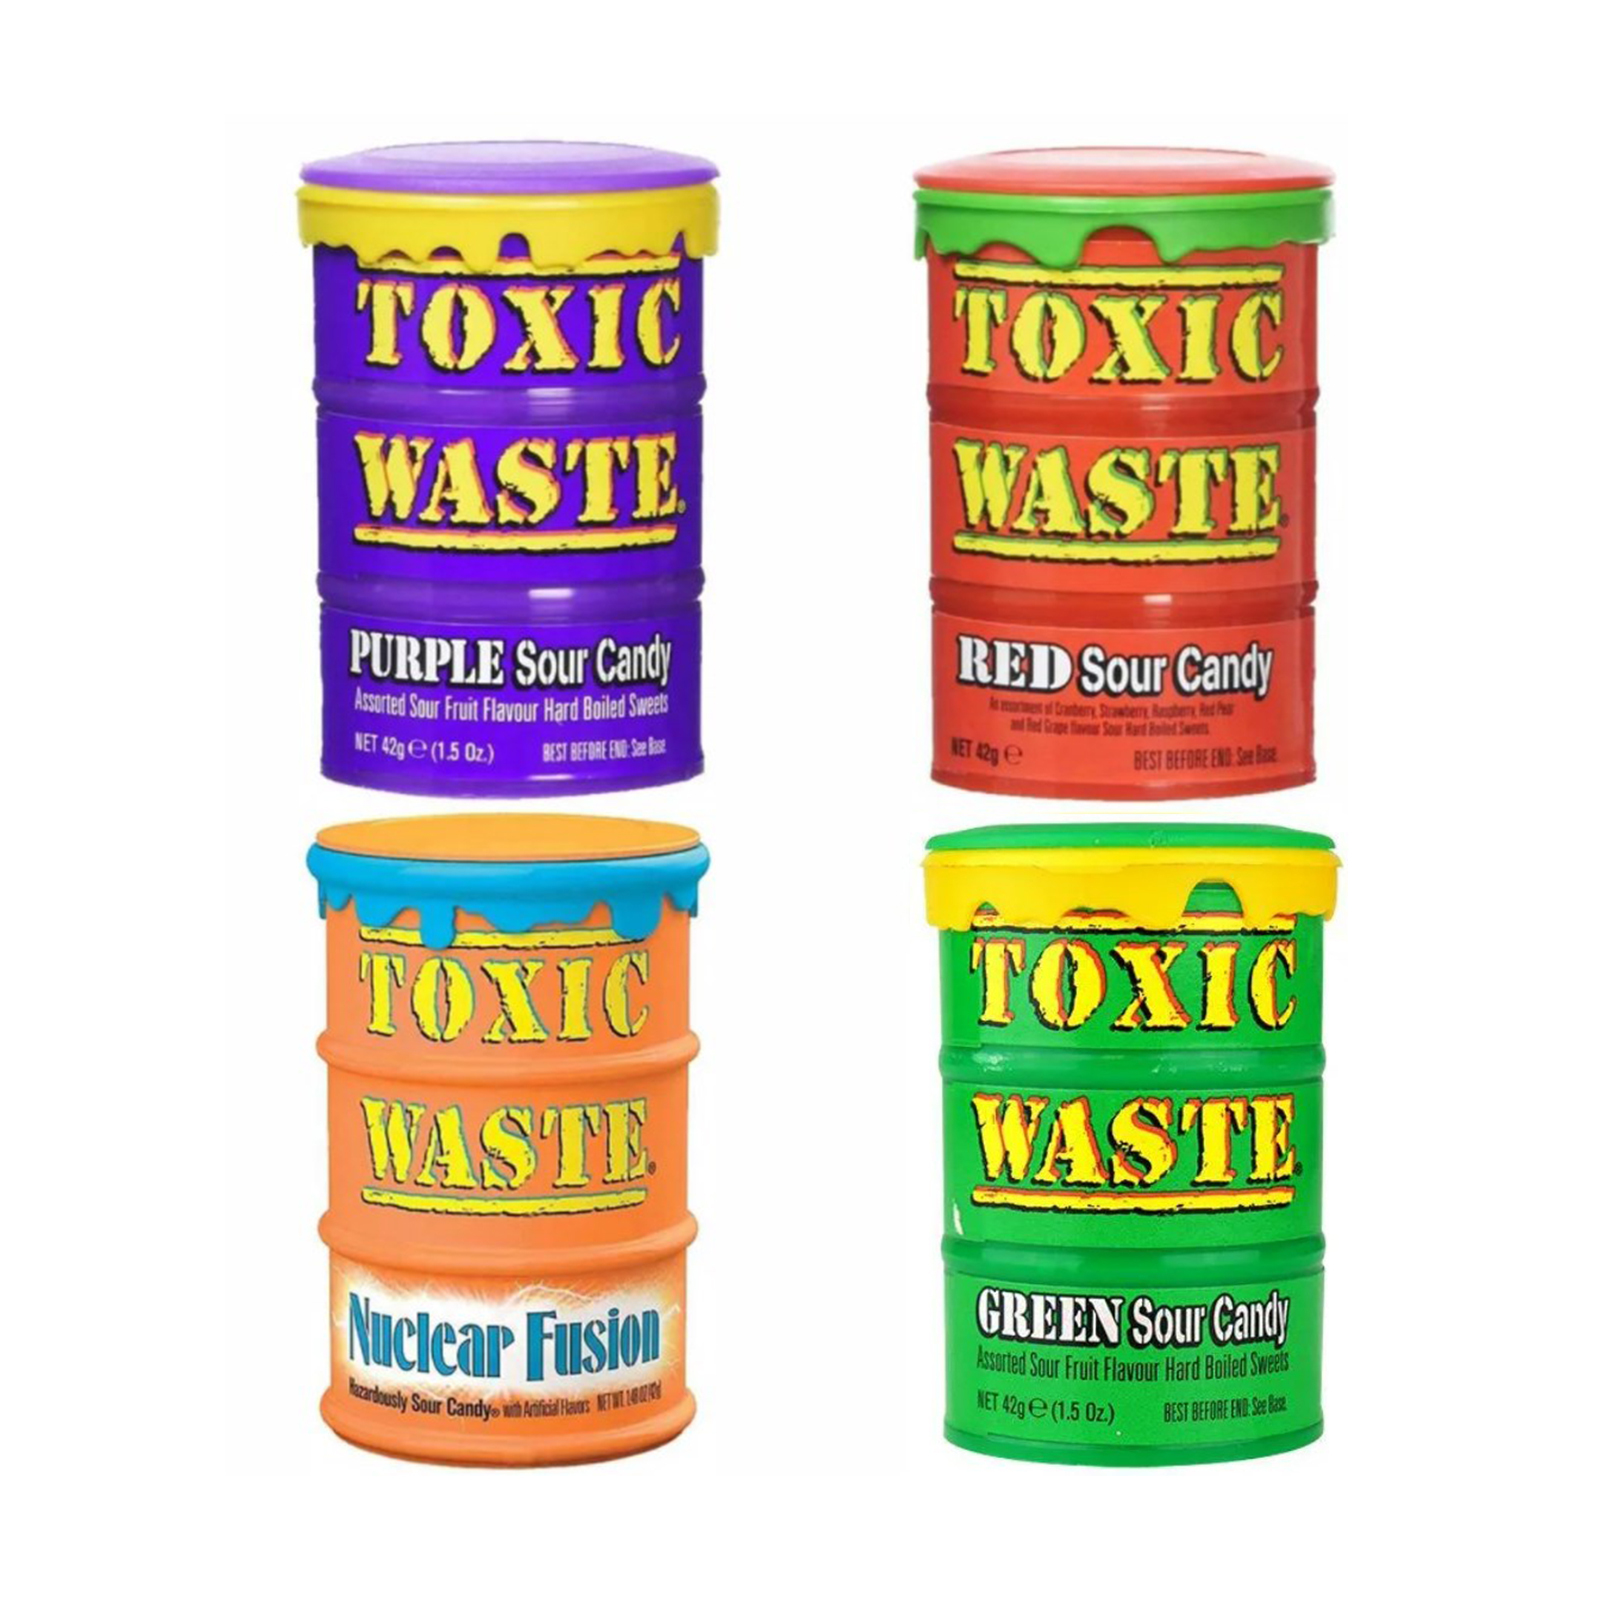 Токсик 5. Леденцы Toxic waste. Конфеты Токсик Вейст. Токсик Вейст вкусы. Кислые конфеты Toxic waste.